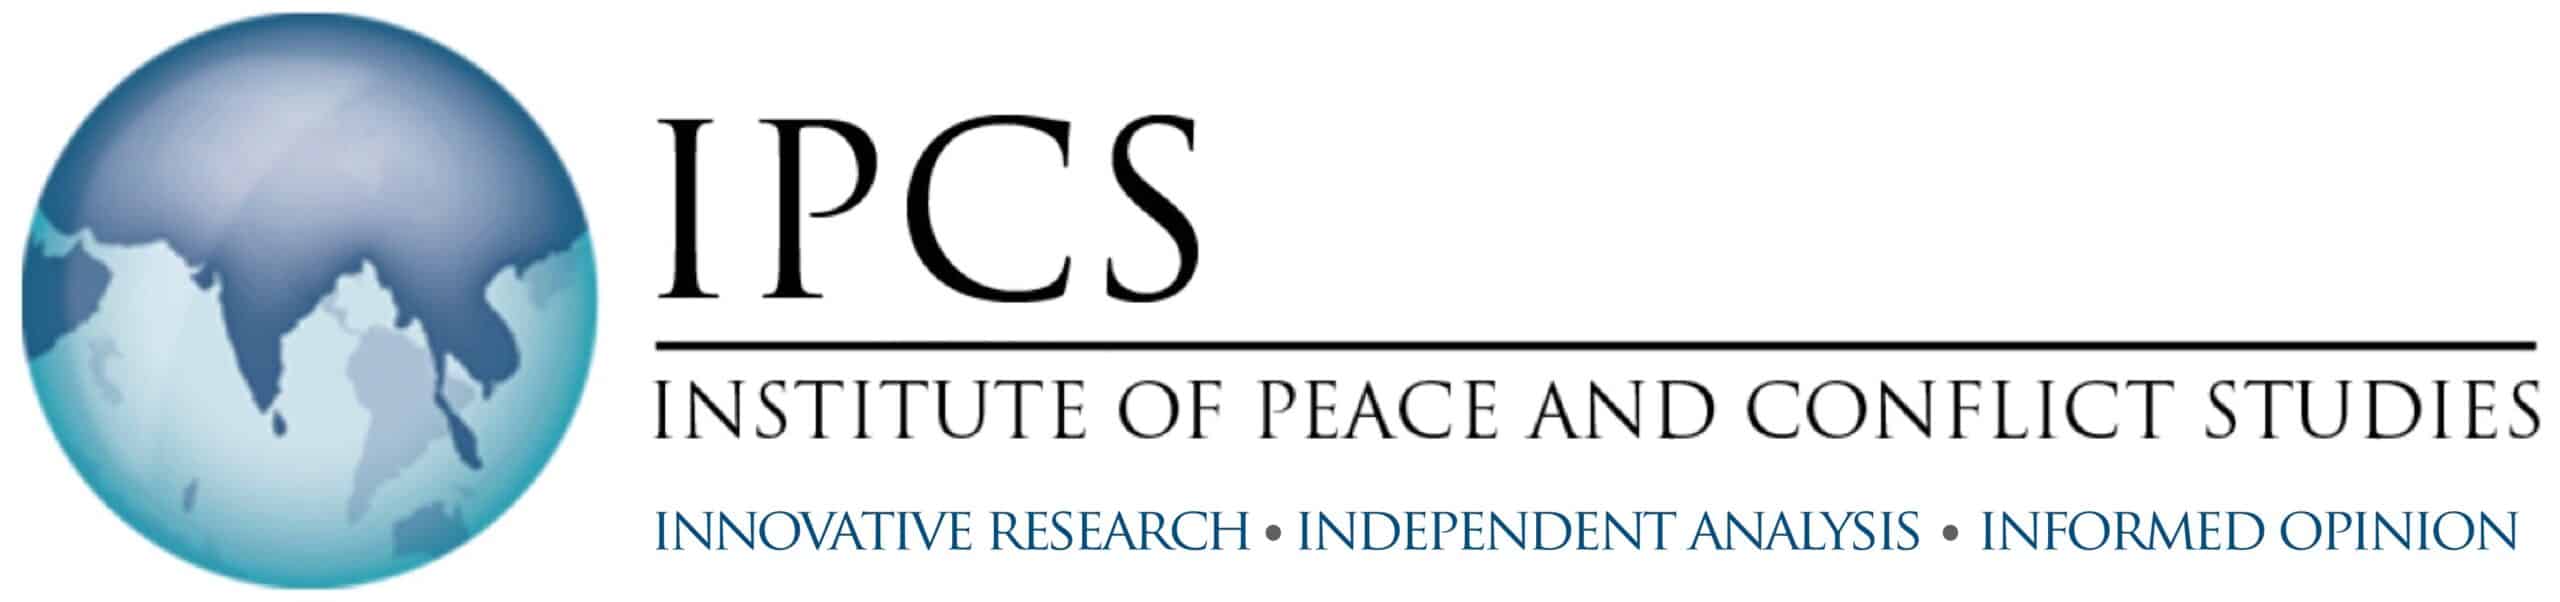 Institute of Peace and Conflict Studies (IPCS)